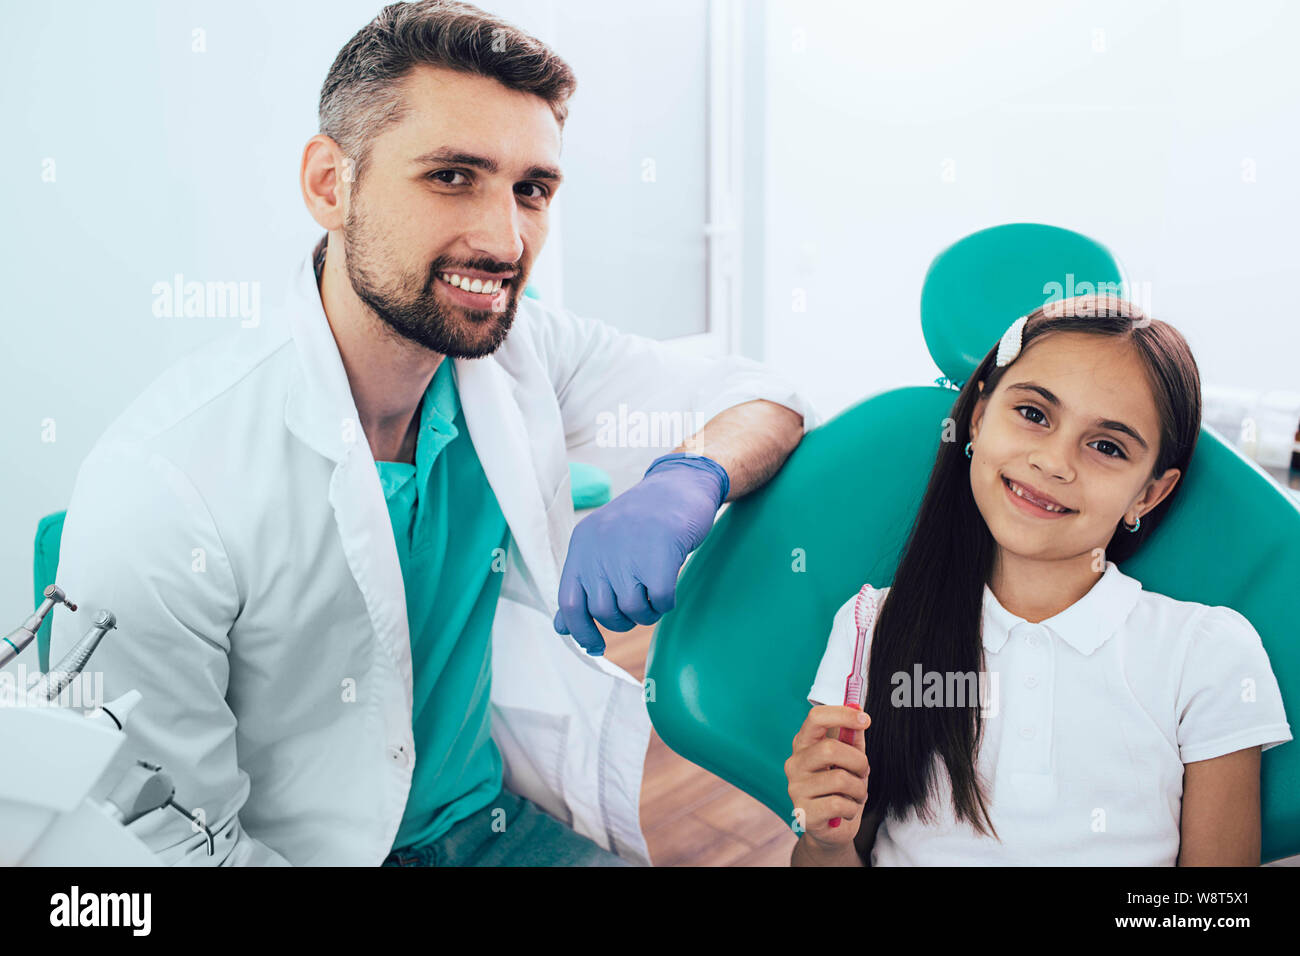 Pequeña niña de raza mixta en el sillón dental sentado cerca de su dentista. Ella sujetando el cepillo dental y sonriente. La forma correcta de cepillado de dientes Foto de stock